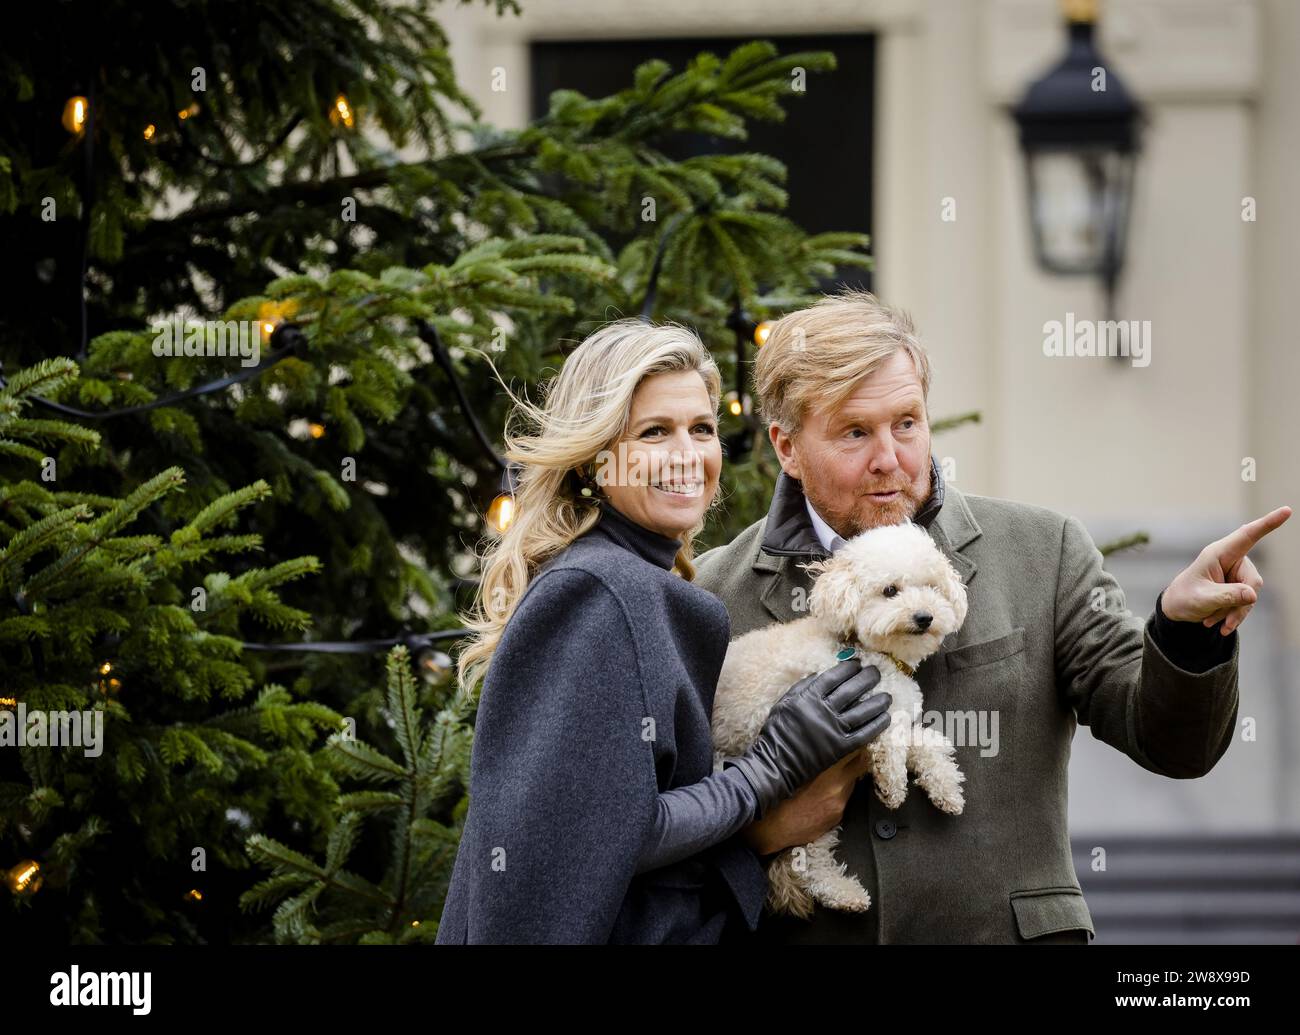 DEN HAAG - König Willem-Alexander und Königin Maxima während der traditionellen Fotosession der königlichen Familie im Huis Ten Bosch Palast. ANP SEM VAN DER WAL niederlande aus - belgien aus Stockfoto